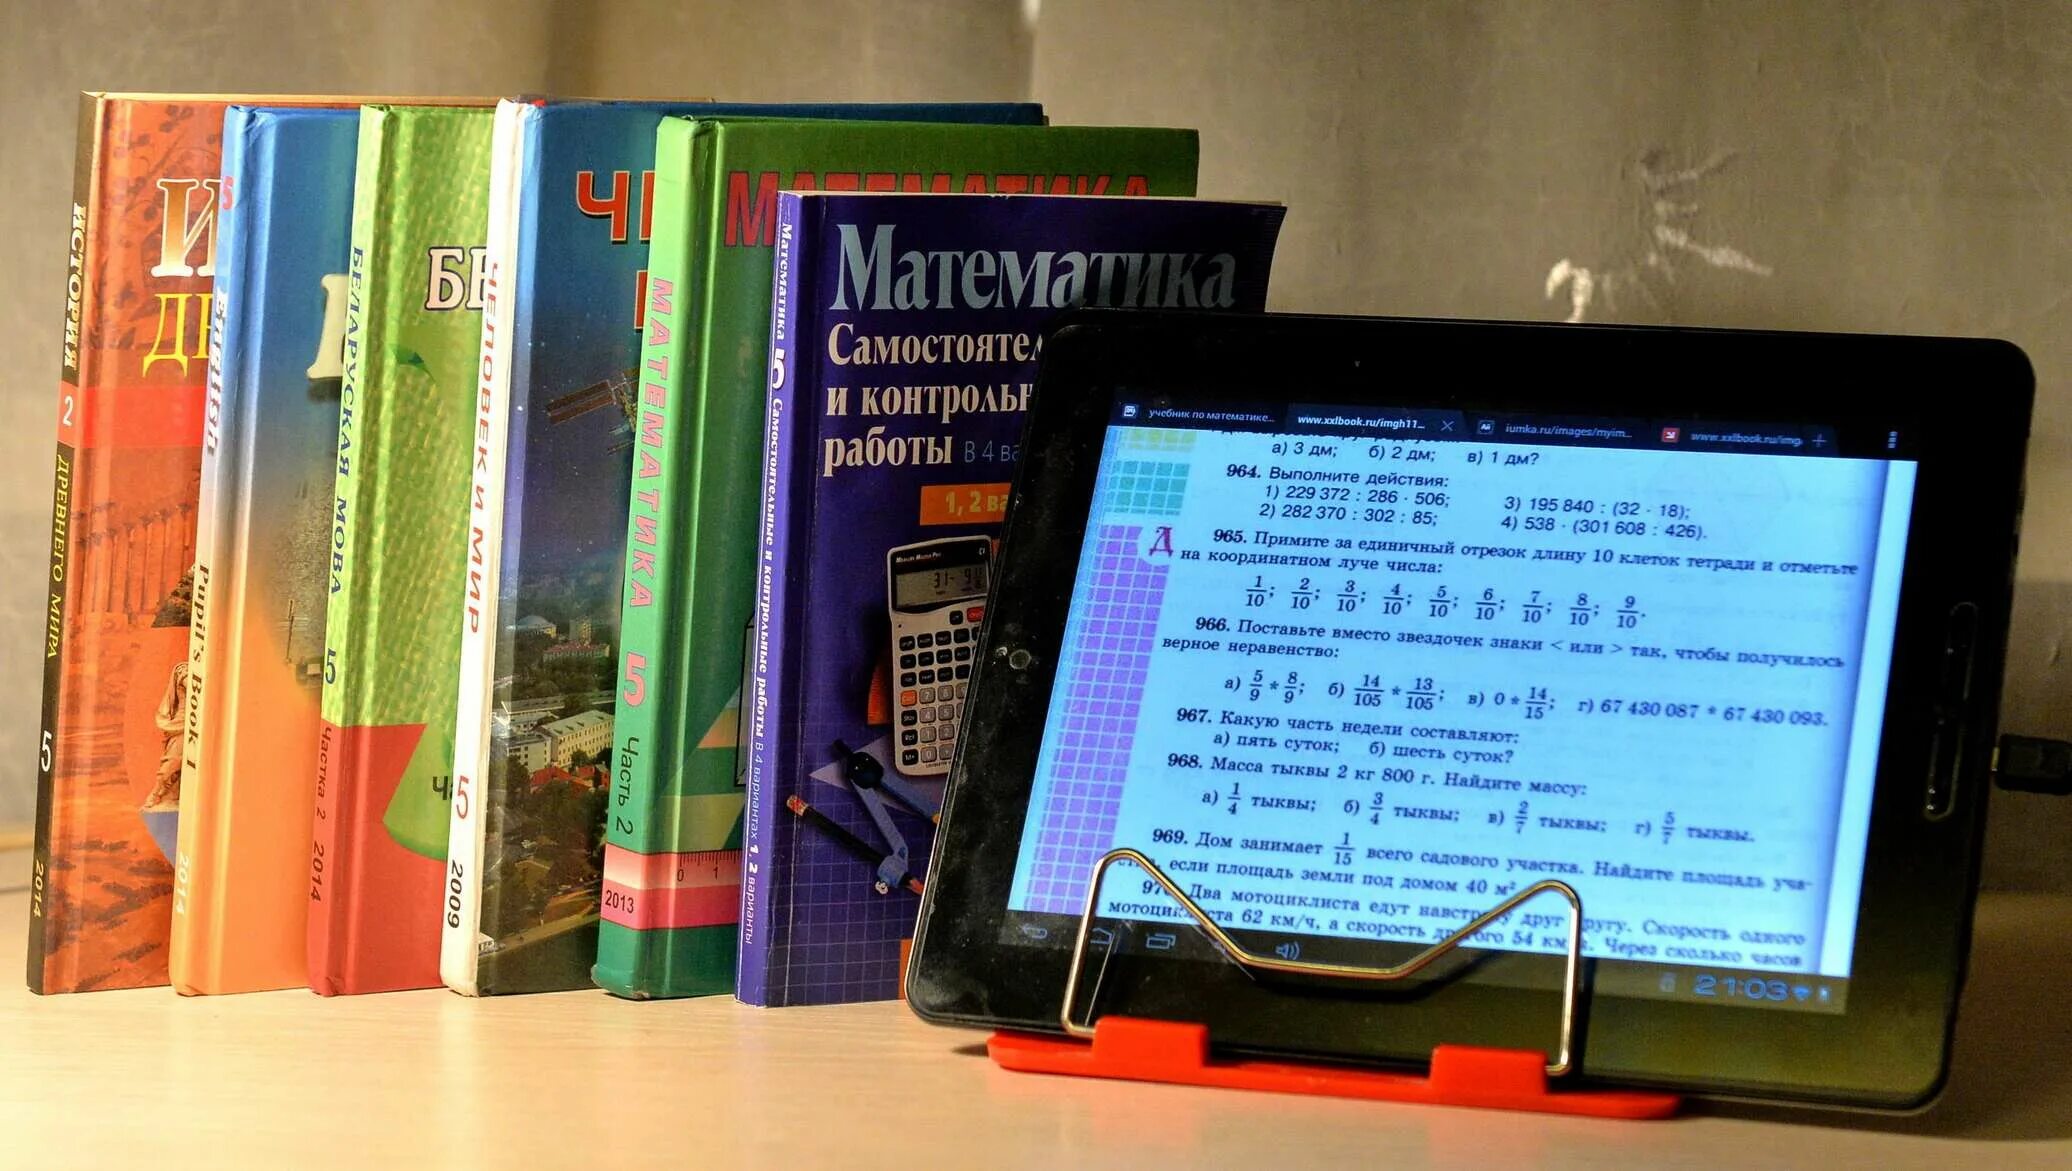 Первые электронные учебники. Электронный учебник. Школьные учебники. Современные цифровые учебники. Электронные учебники в школе.